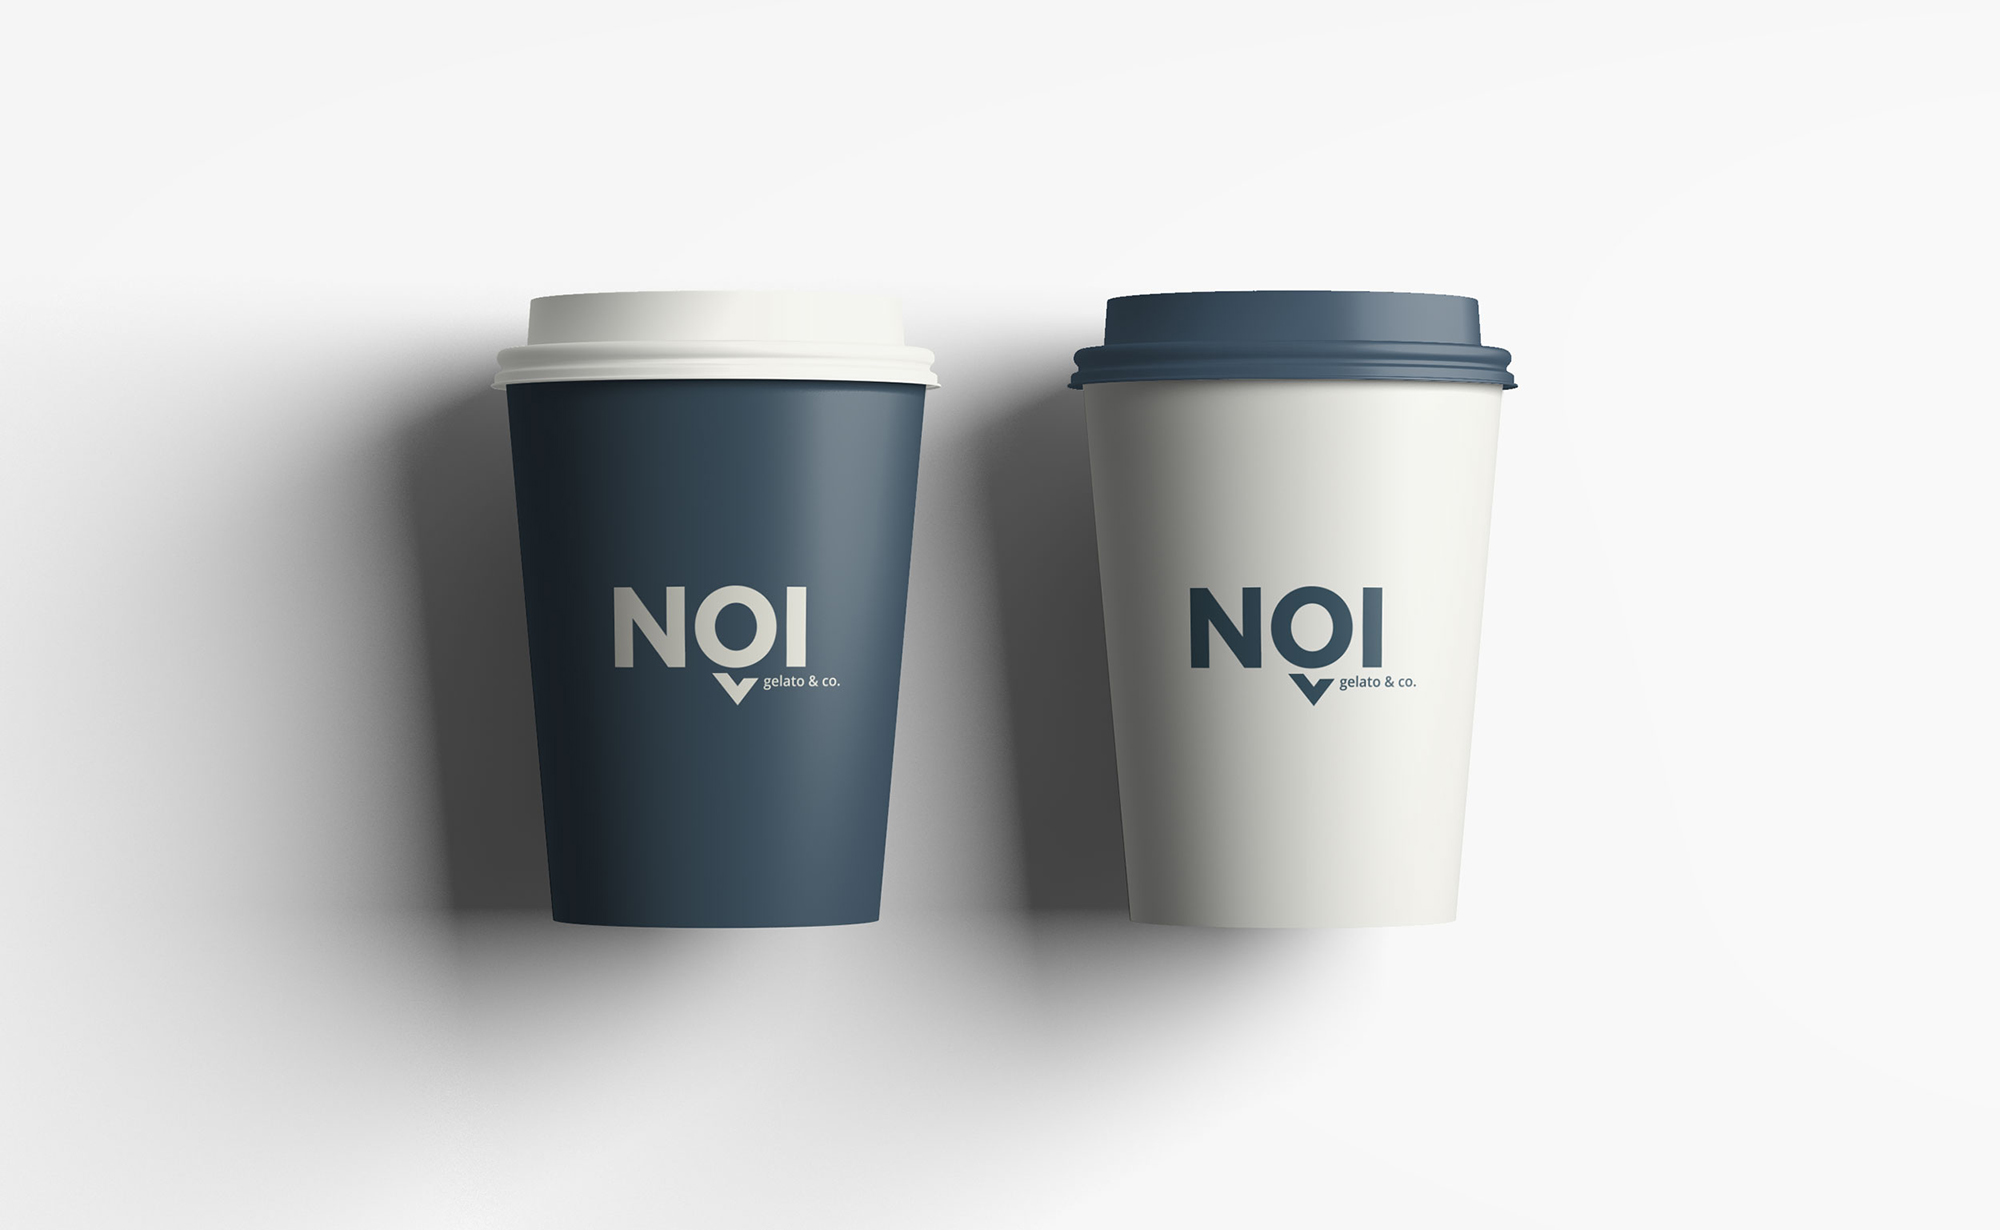 Diseño y desarrollo de identidad visual corporativa para NOI Gelato&Co. Vista detalle vasos de papel take away.